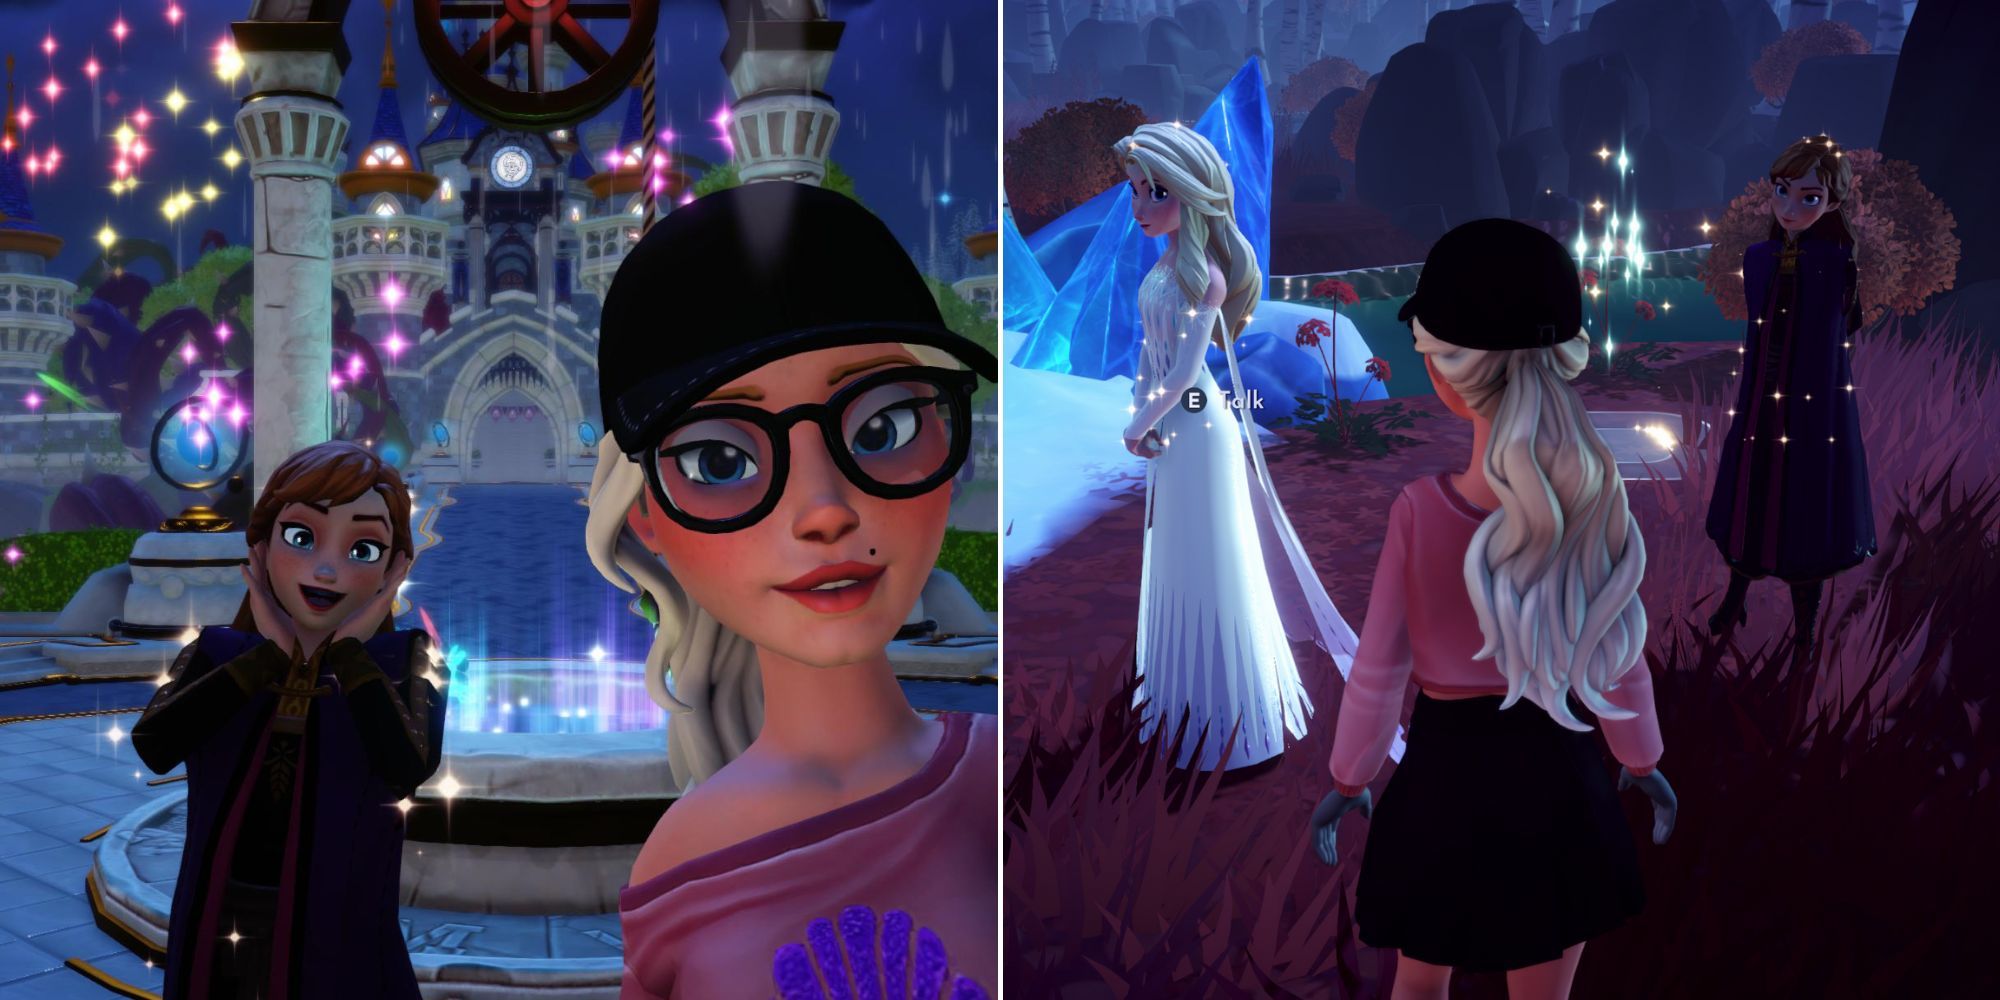 Frozen Elsa - Dreamlight Valley Wiki